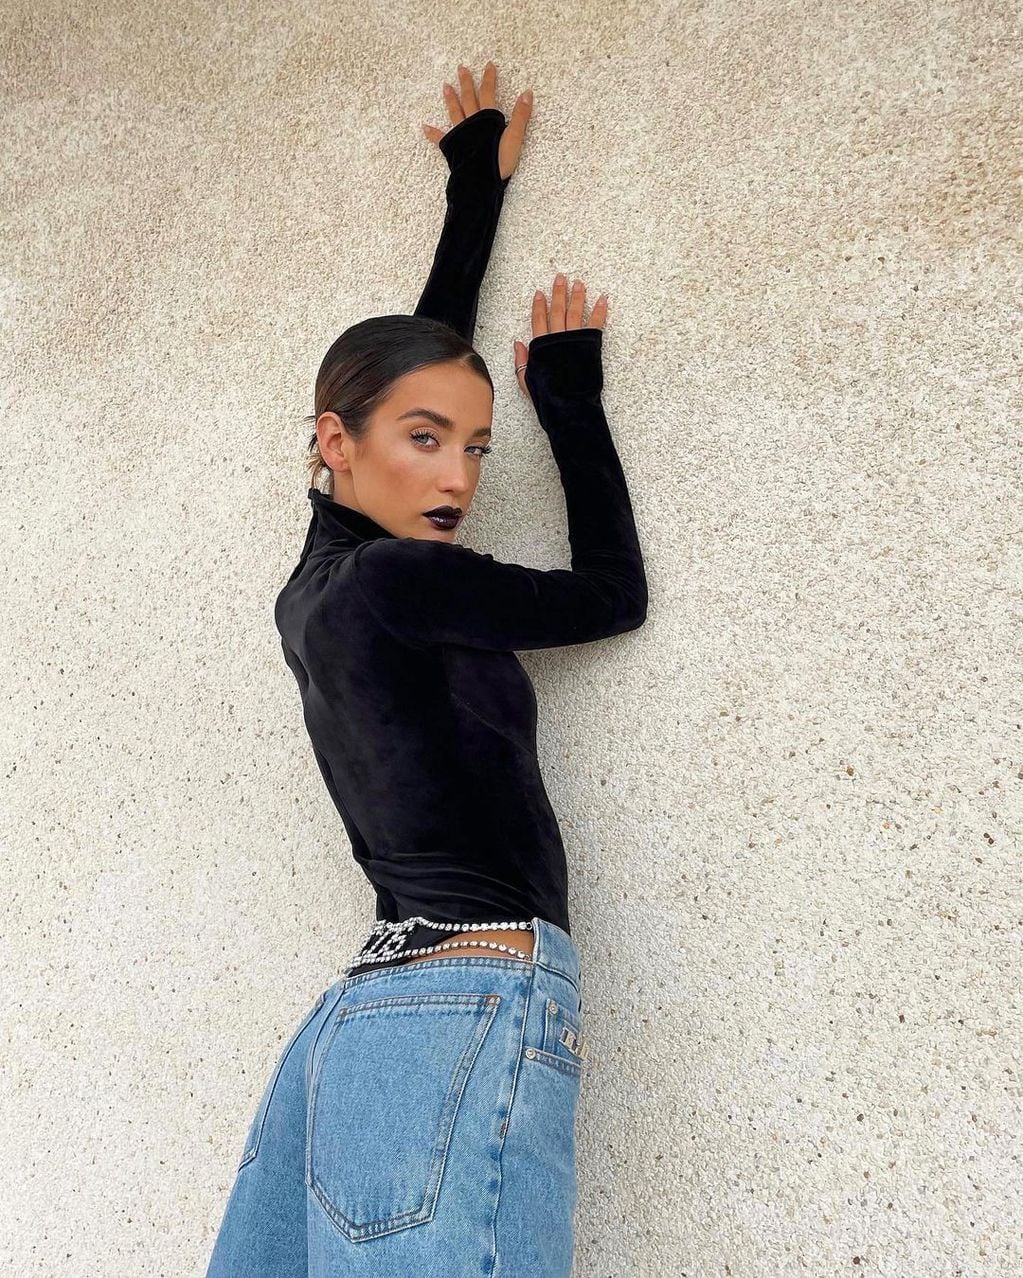 Con una pose sensuaL, María Pedraza causa sensación en Instagram